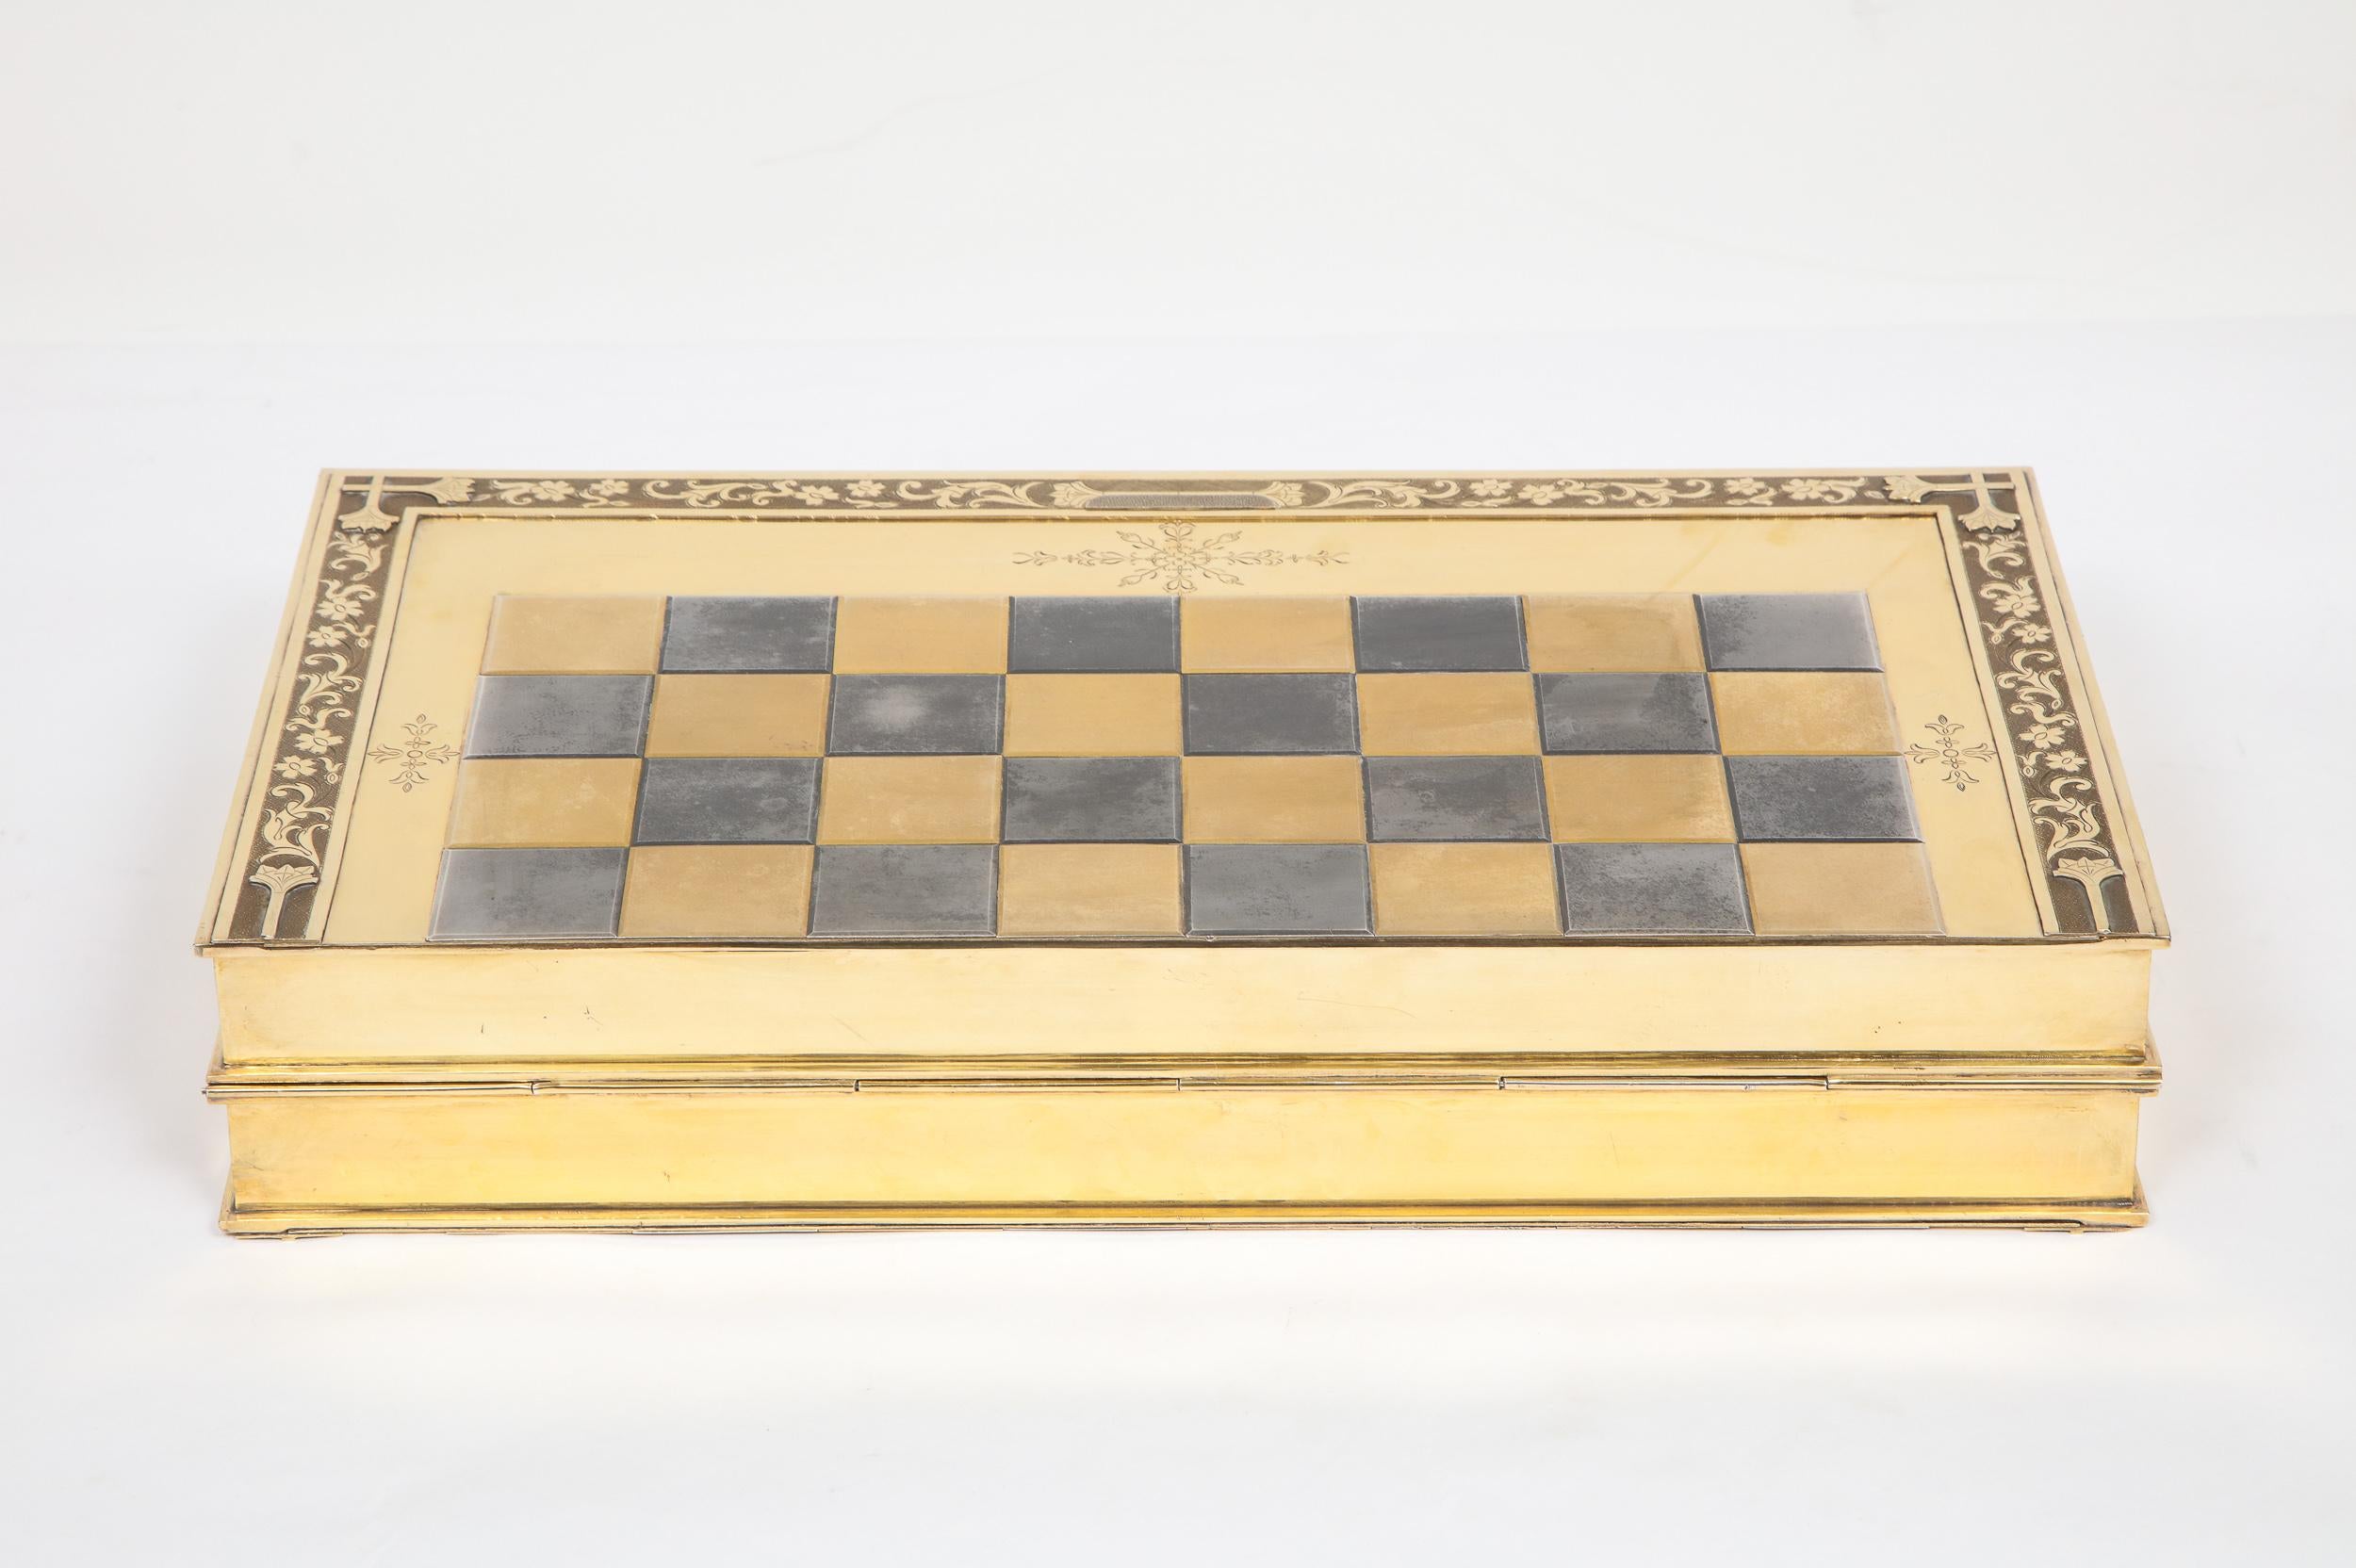 Rare English Silver-Gilt Book-Form Chess and Backgammon Game Board, circa 1976 For Sale 7